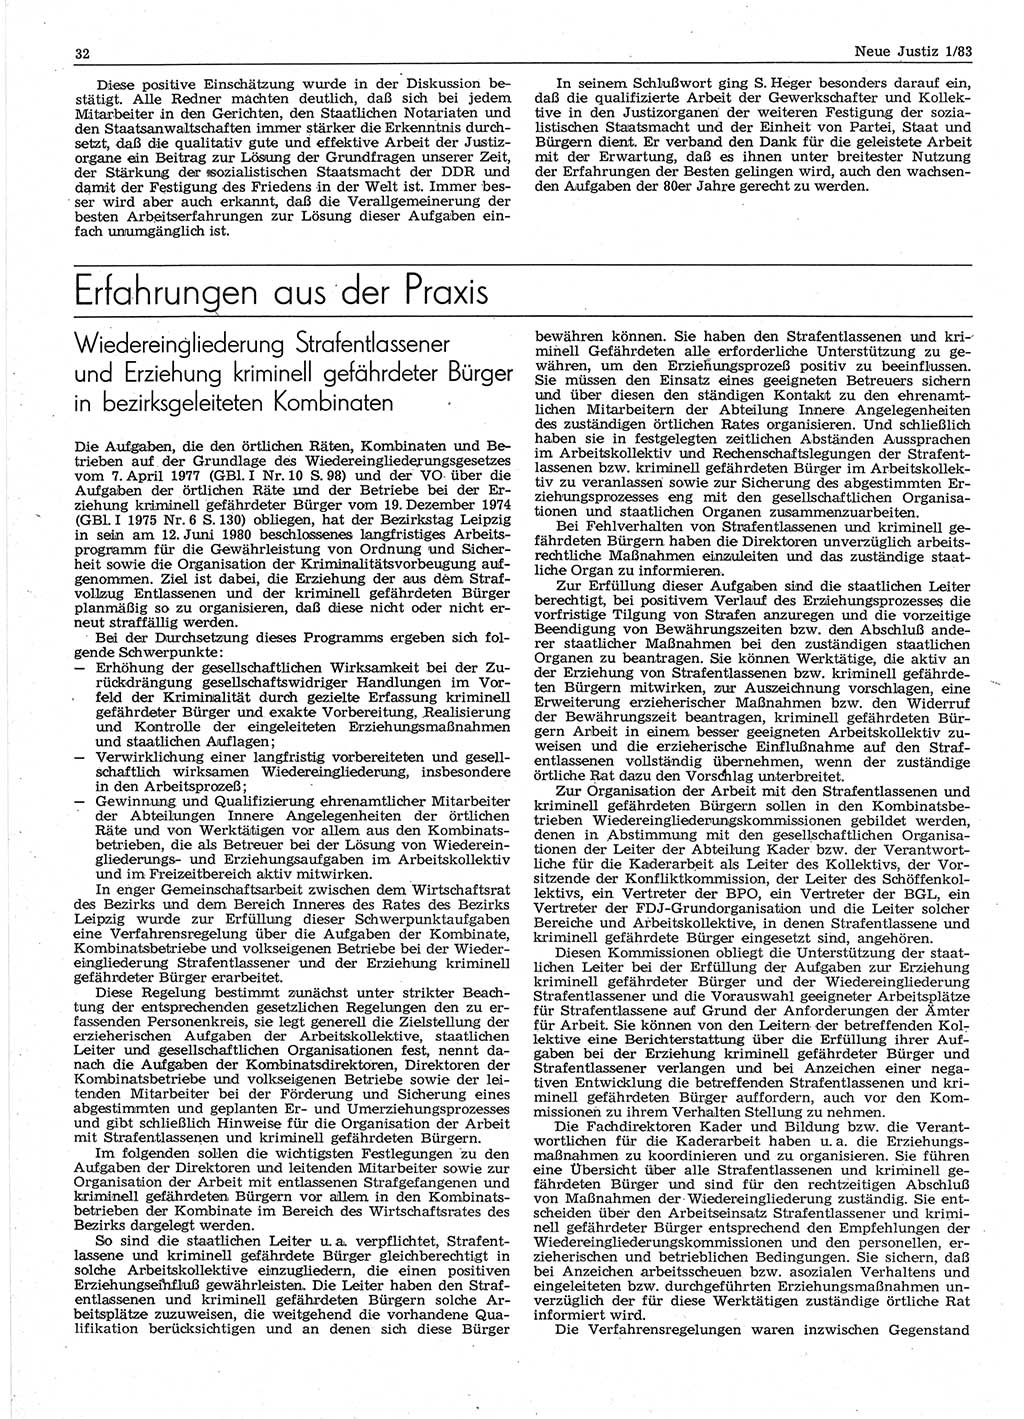 Neue Justiz (NJ), Zeitschrift für sozialistisches Recht und Gesetzlichkeit [Deutsche Demokratische Republik (DDR)], 37. Jahrgang 1983, Seite 32 (NJ DDR 1983, S. 32)